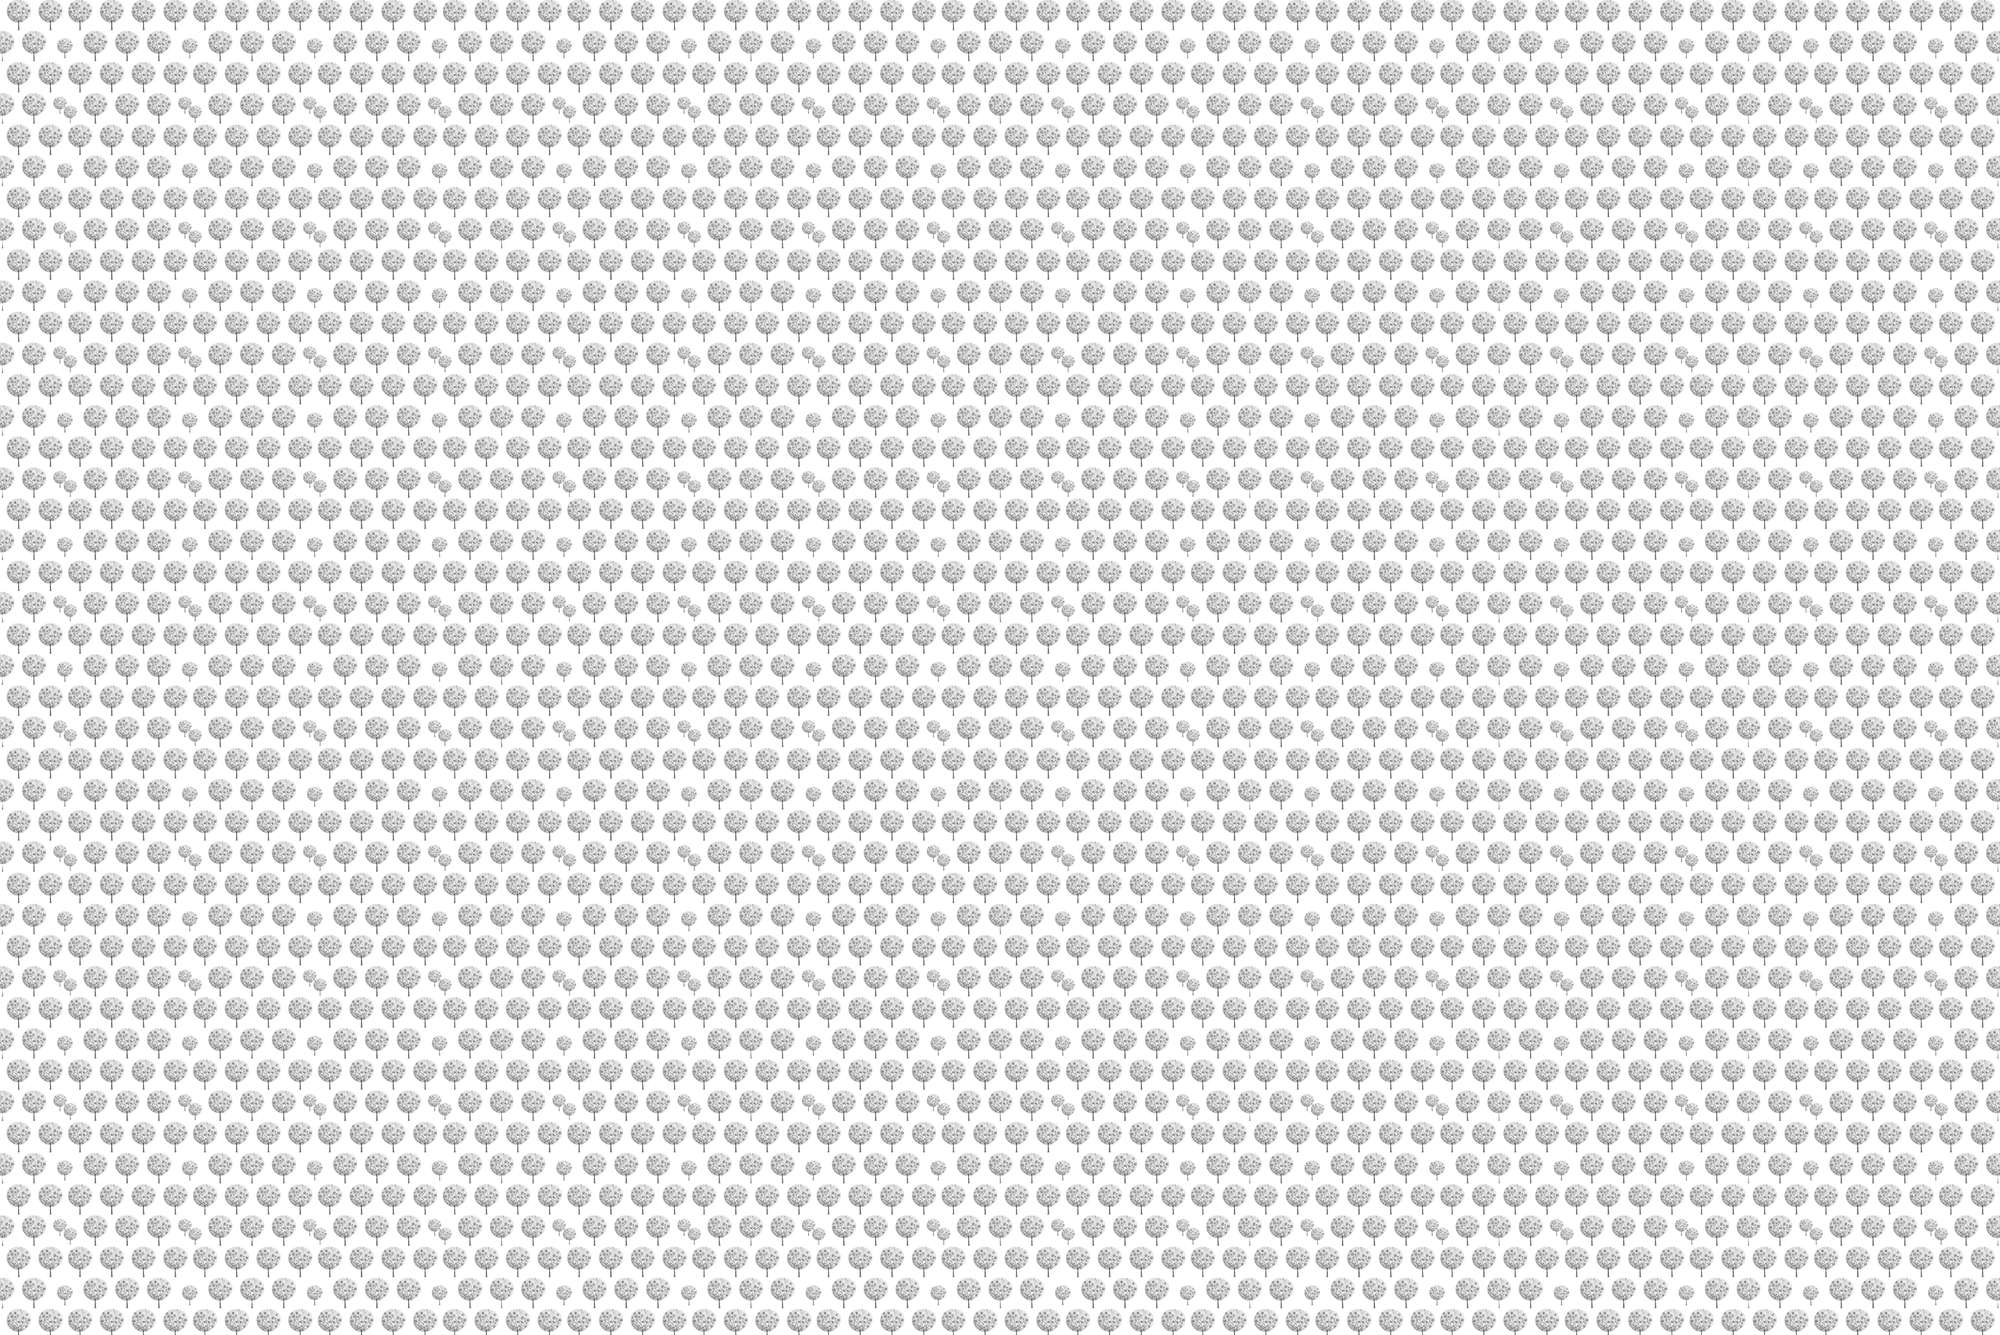             Design Fototapete Wald Muster in Grau auf weißem Hintergrund auf Matt Glattvlies
        